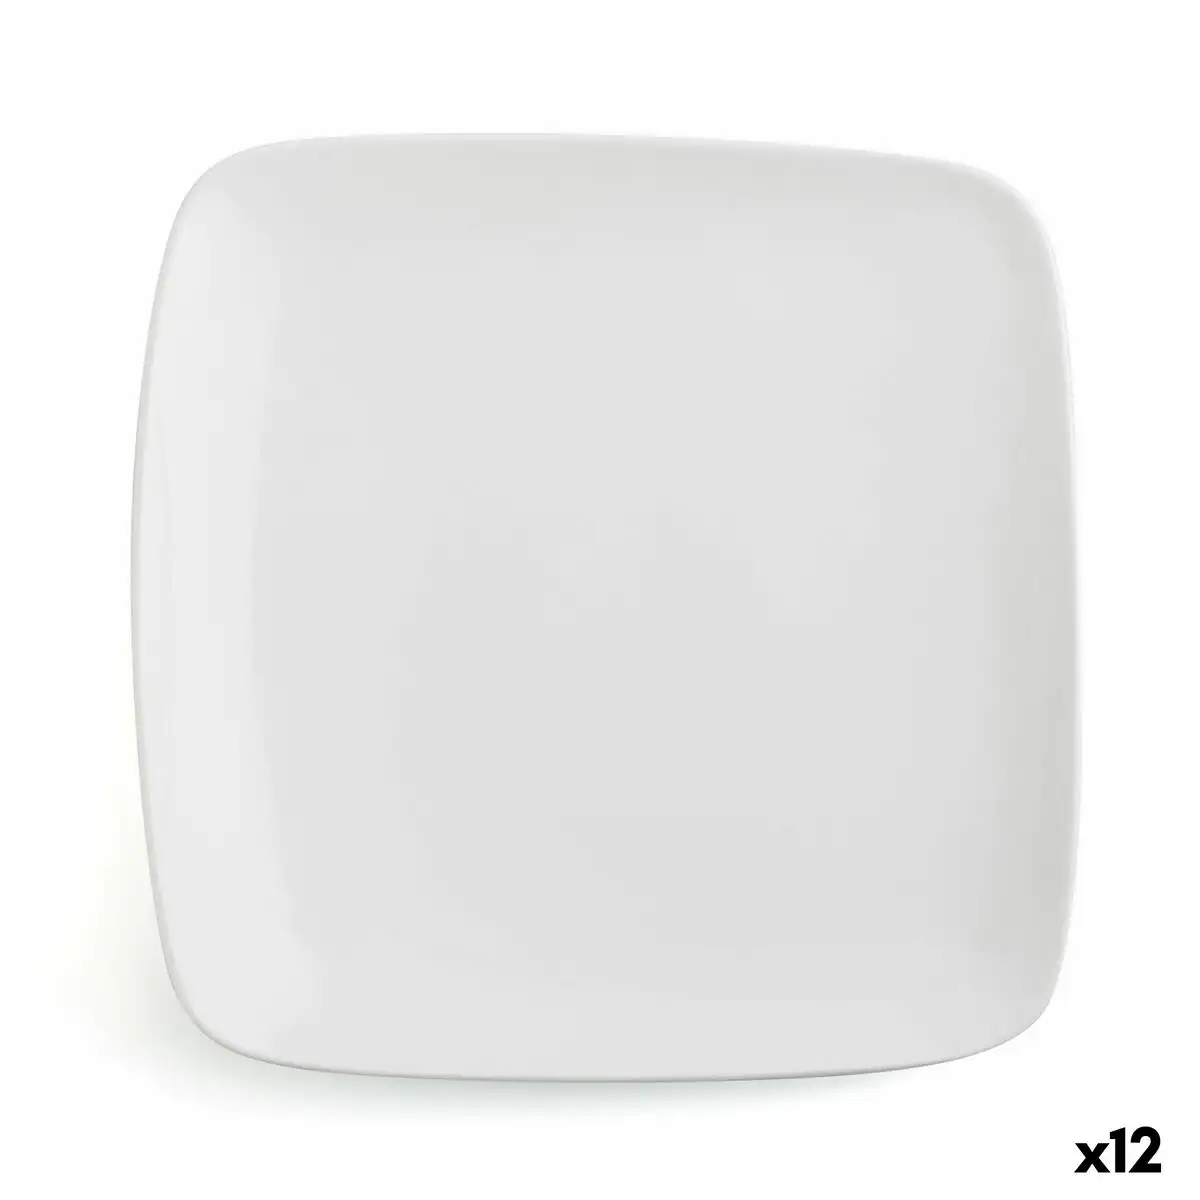 Assiette plate ariane vital carre ceramique blanc 27 x 21 cm 12 unites _7104. DIAYTAR SENEGAL - L'Art de Choisir, l'Art de Vivre. Parcourez notre boutique en ligne et découvrez des produits qui transforment chaque choix en une expérience enrichissante.